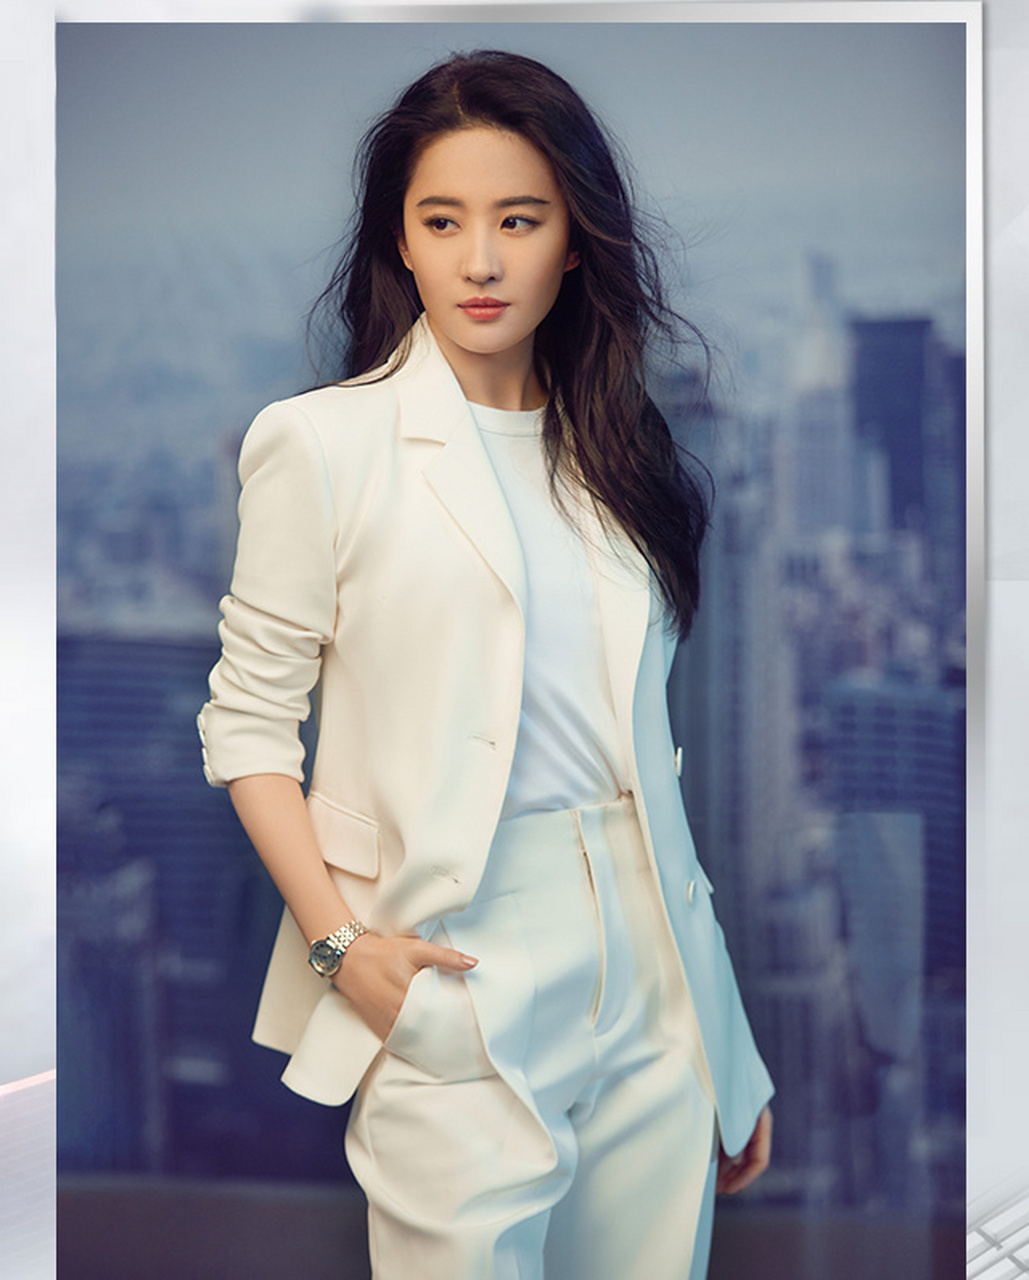 刘亦菲穿一身白色西装,精致干练,高端大气,高雅时尚,尽显女神的气质